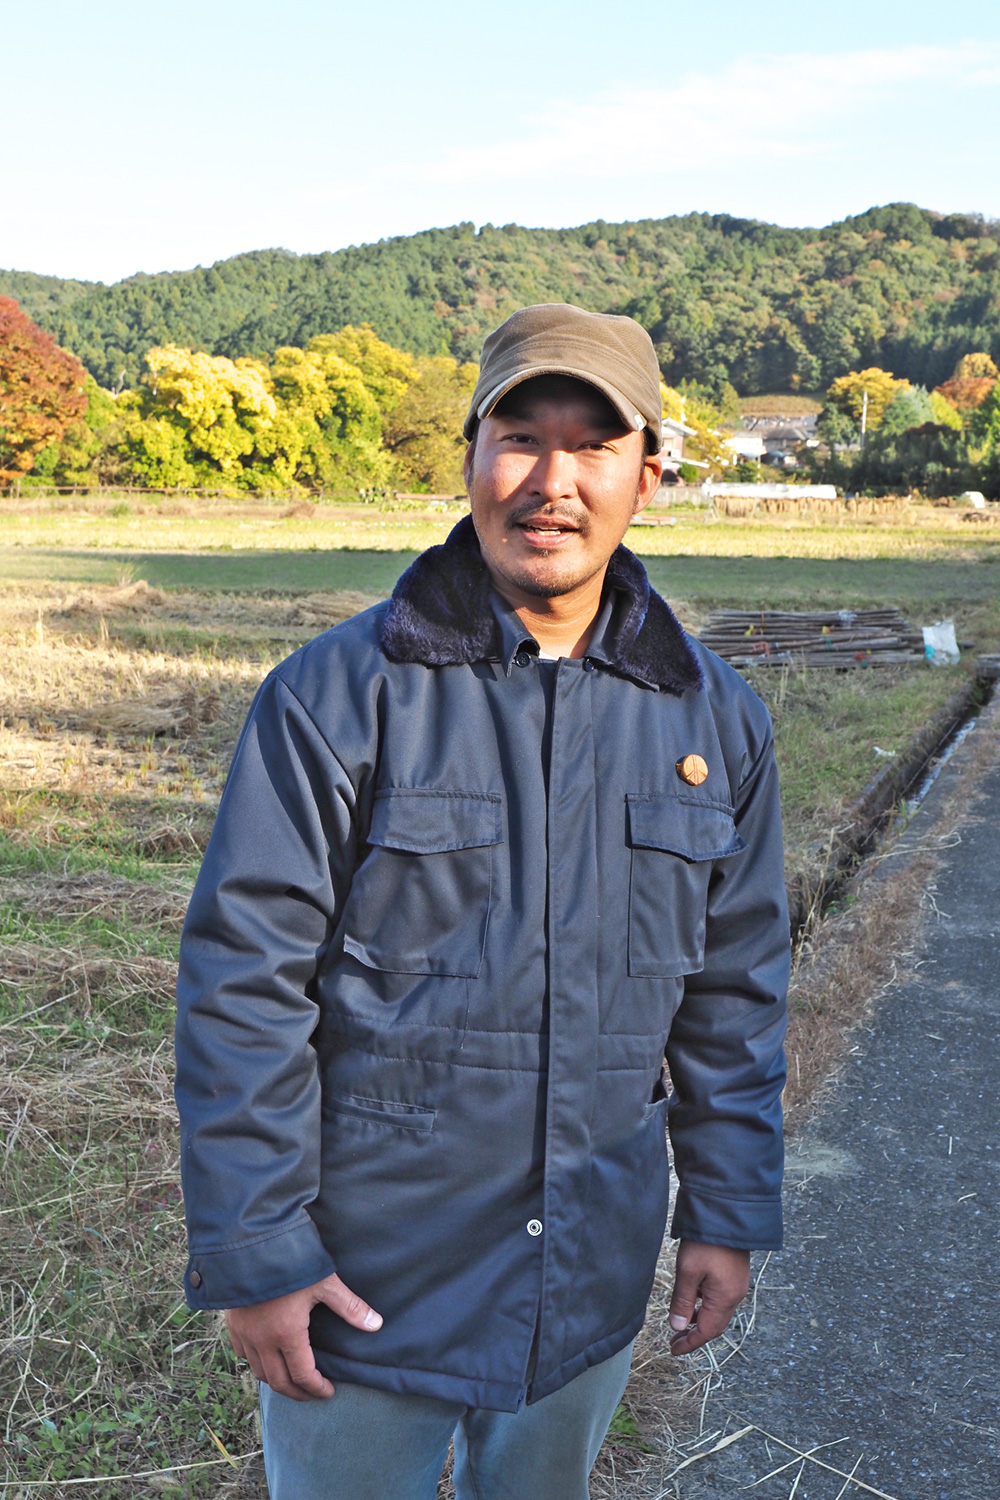 岐阜県出身の坂本浩史朗さん。農業は始めるまではまったくの素人だった。